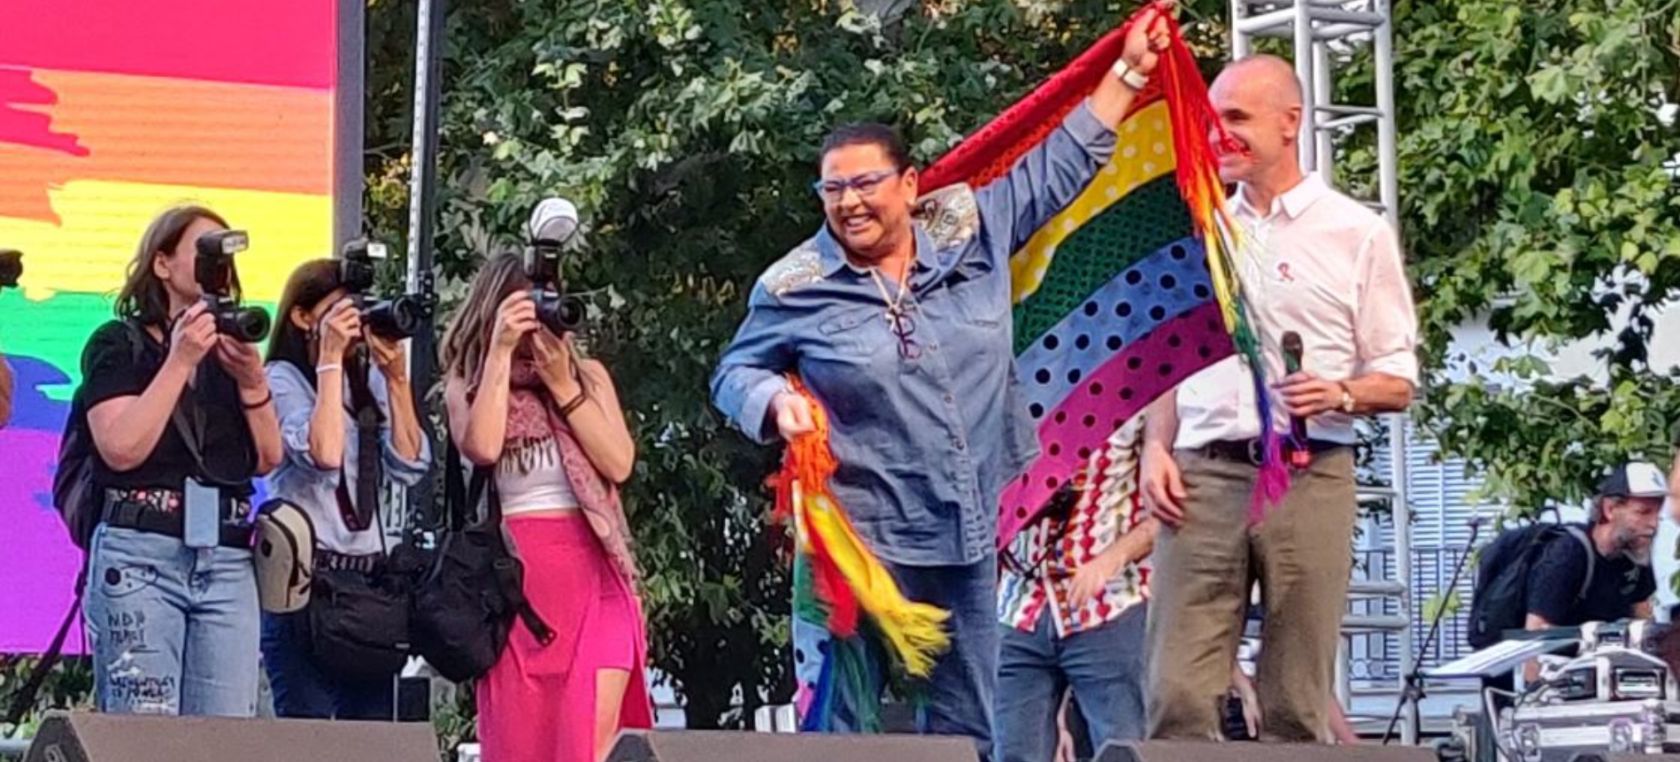 María del Monte presenta a su novia en su emocionante discurso en el Orgullo Gay de Sevilla